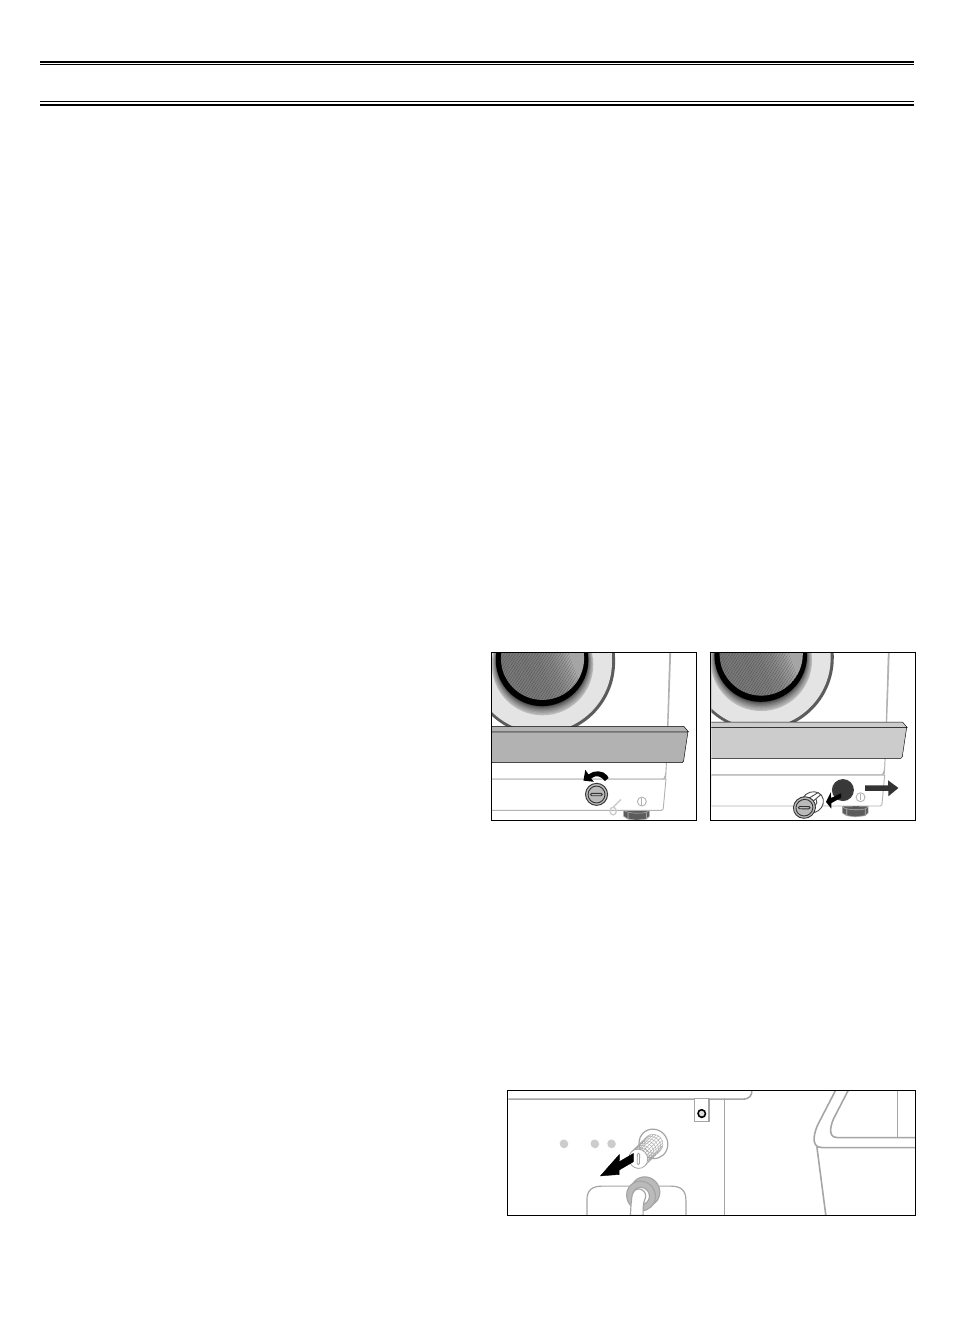 Reinigung und pflege, Wenn die waschmaschine eingefroren ist, Außenflachen der waschmaschine reinigen | Fremdkorperfalle reinigen, Sieb am wasserzulauf reinigen, Außenflächen der waschmaschine reinigen, Fremdkörperfalle reinigen | Samsung F843 Benutzerhandbuch | Seite 9 / 13